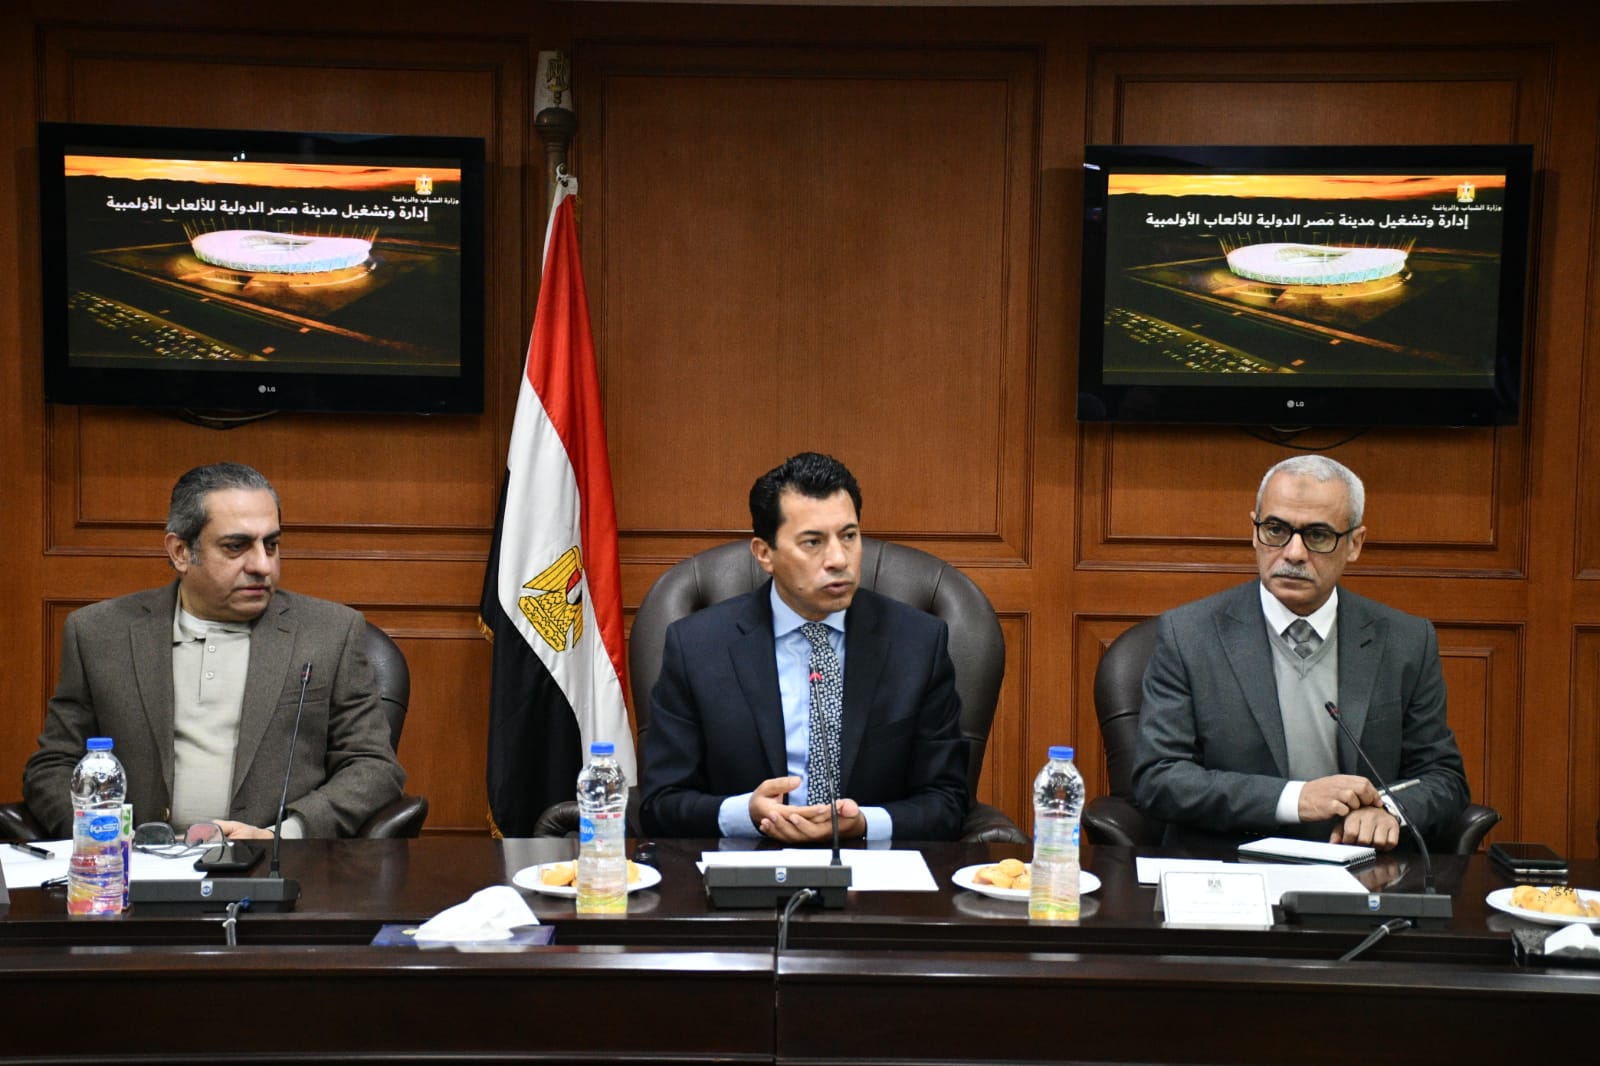 وزير الشباب يناقش مقترح إدارة وتشغيل مدينة مصر الدولية للألعاب الأوليمبية